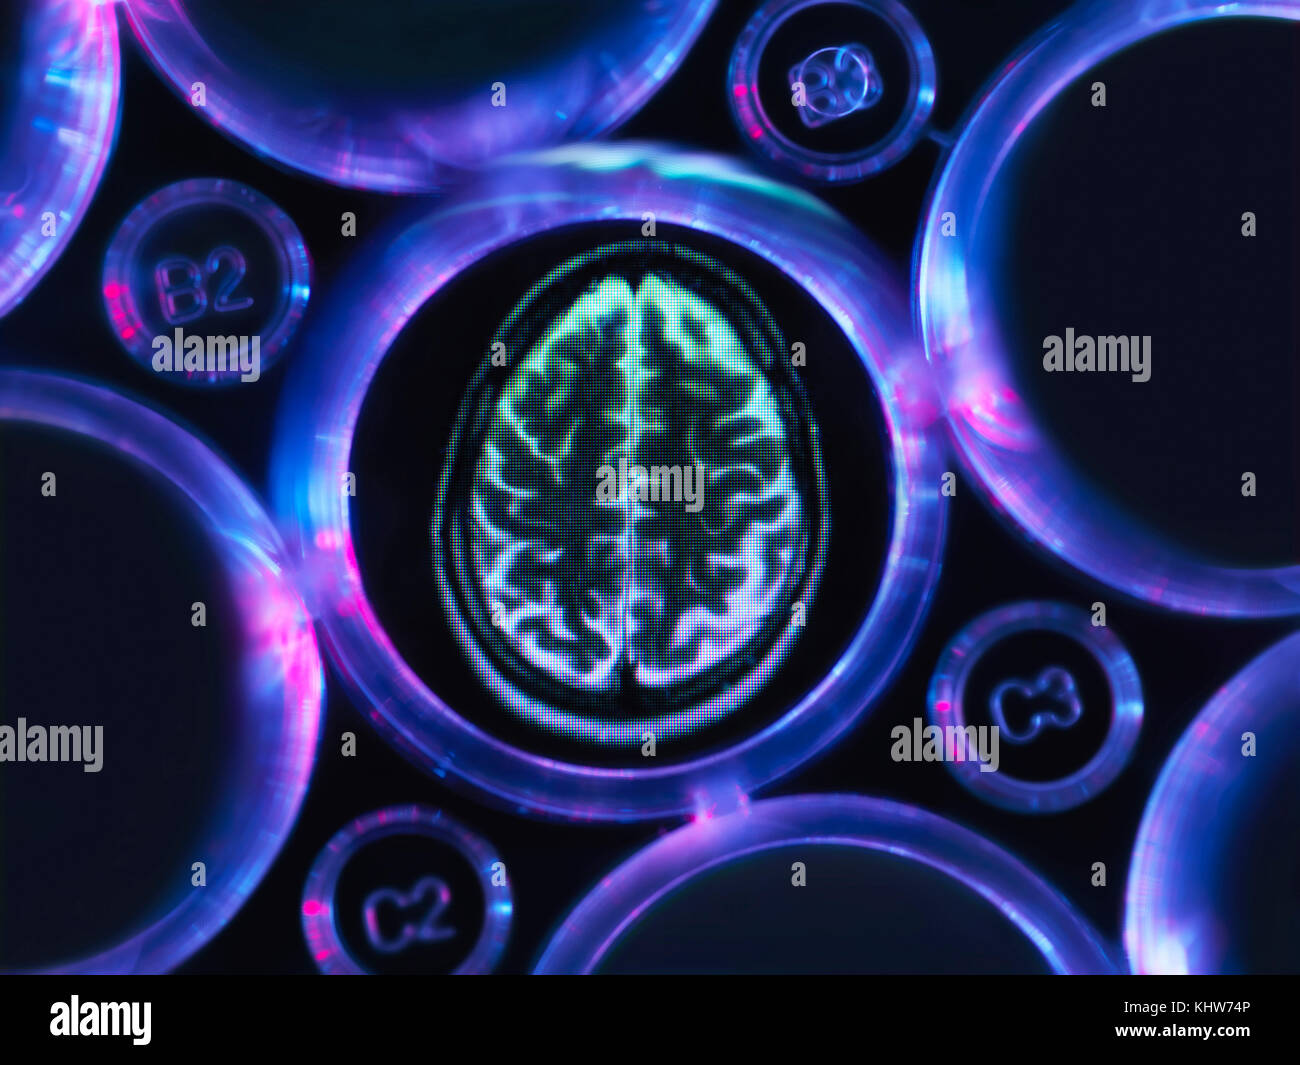 Investigación de Alzheimer y demencia, una exploración cerebral en bandeja de múltiples pocillos utilizada para experimentos de investigación en laboratorio Foto de stock